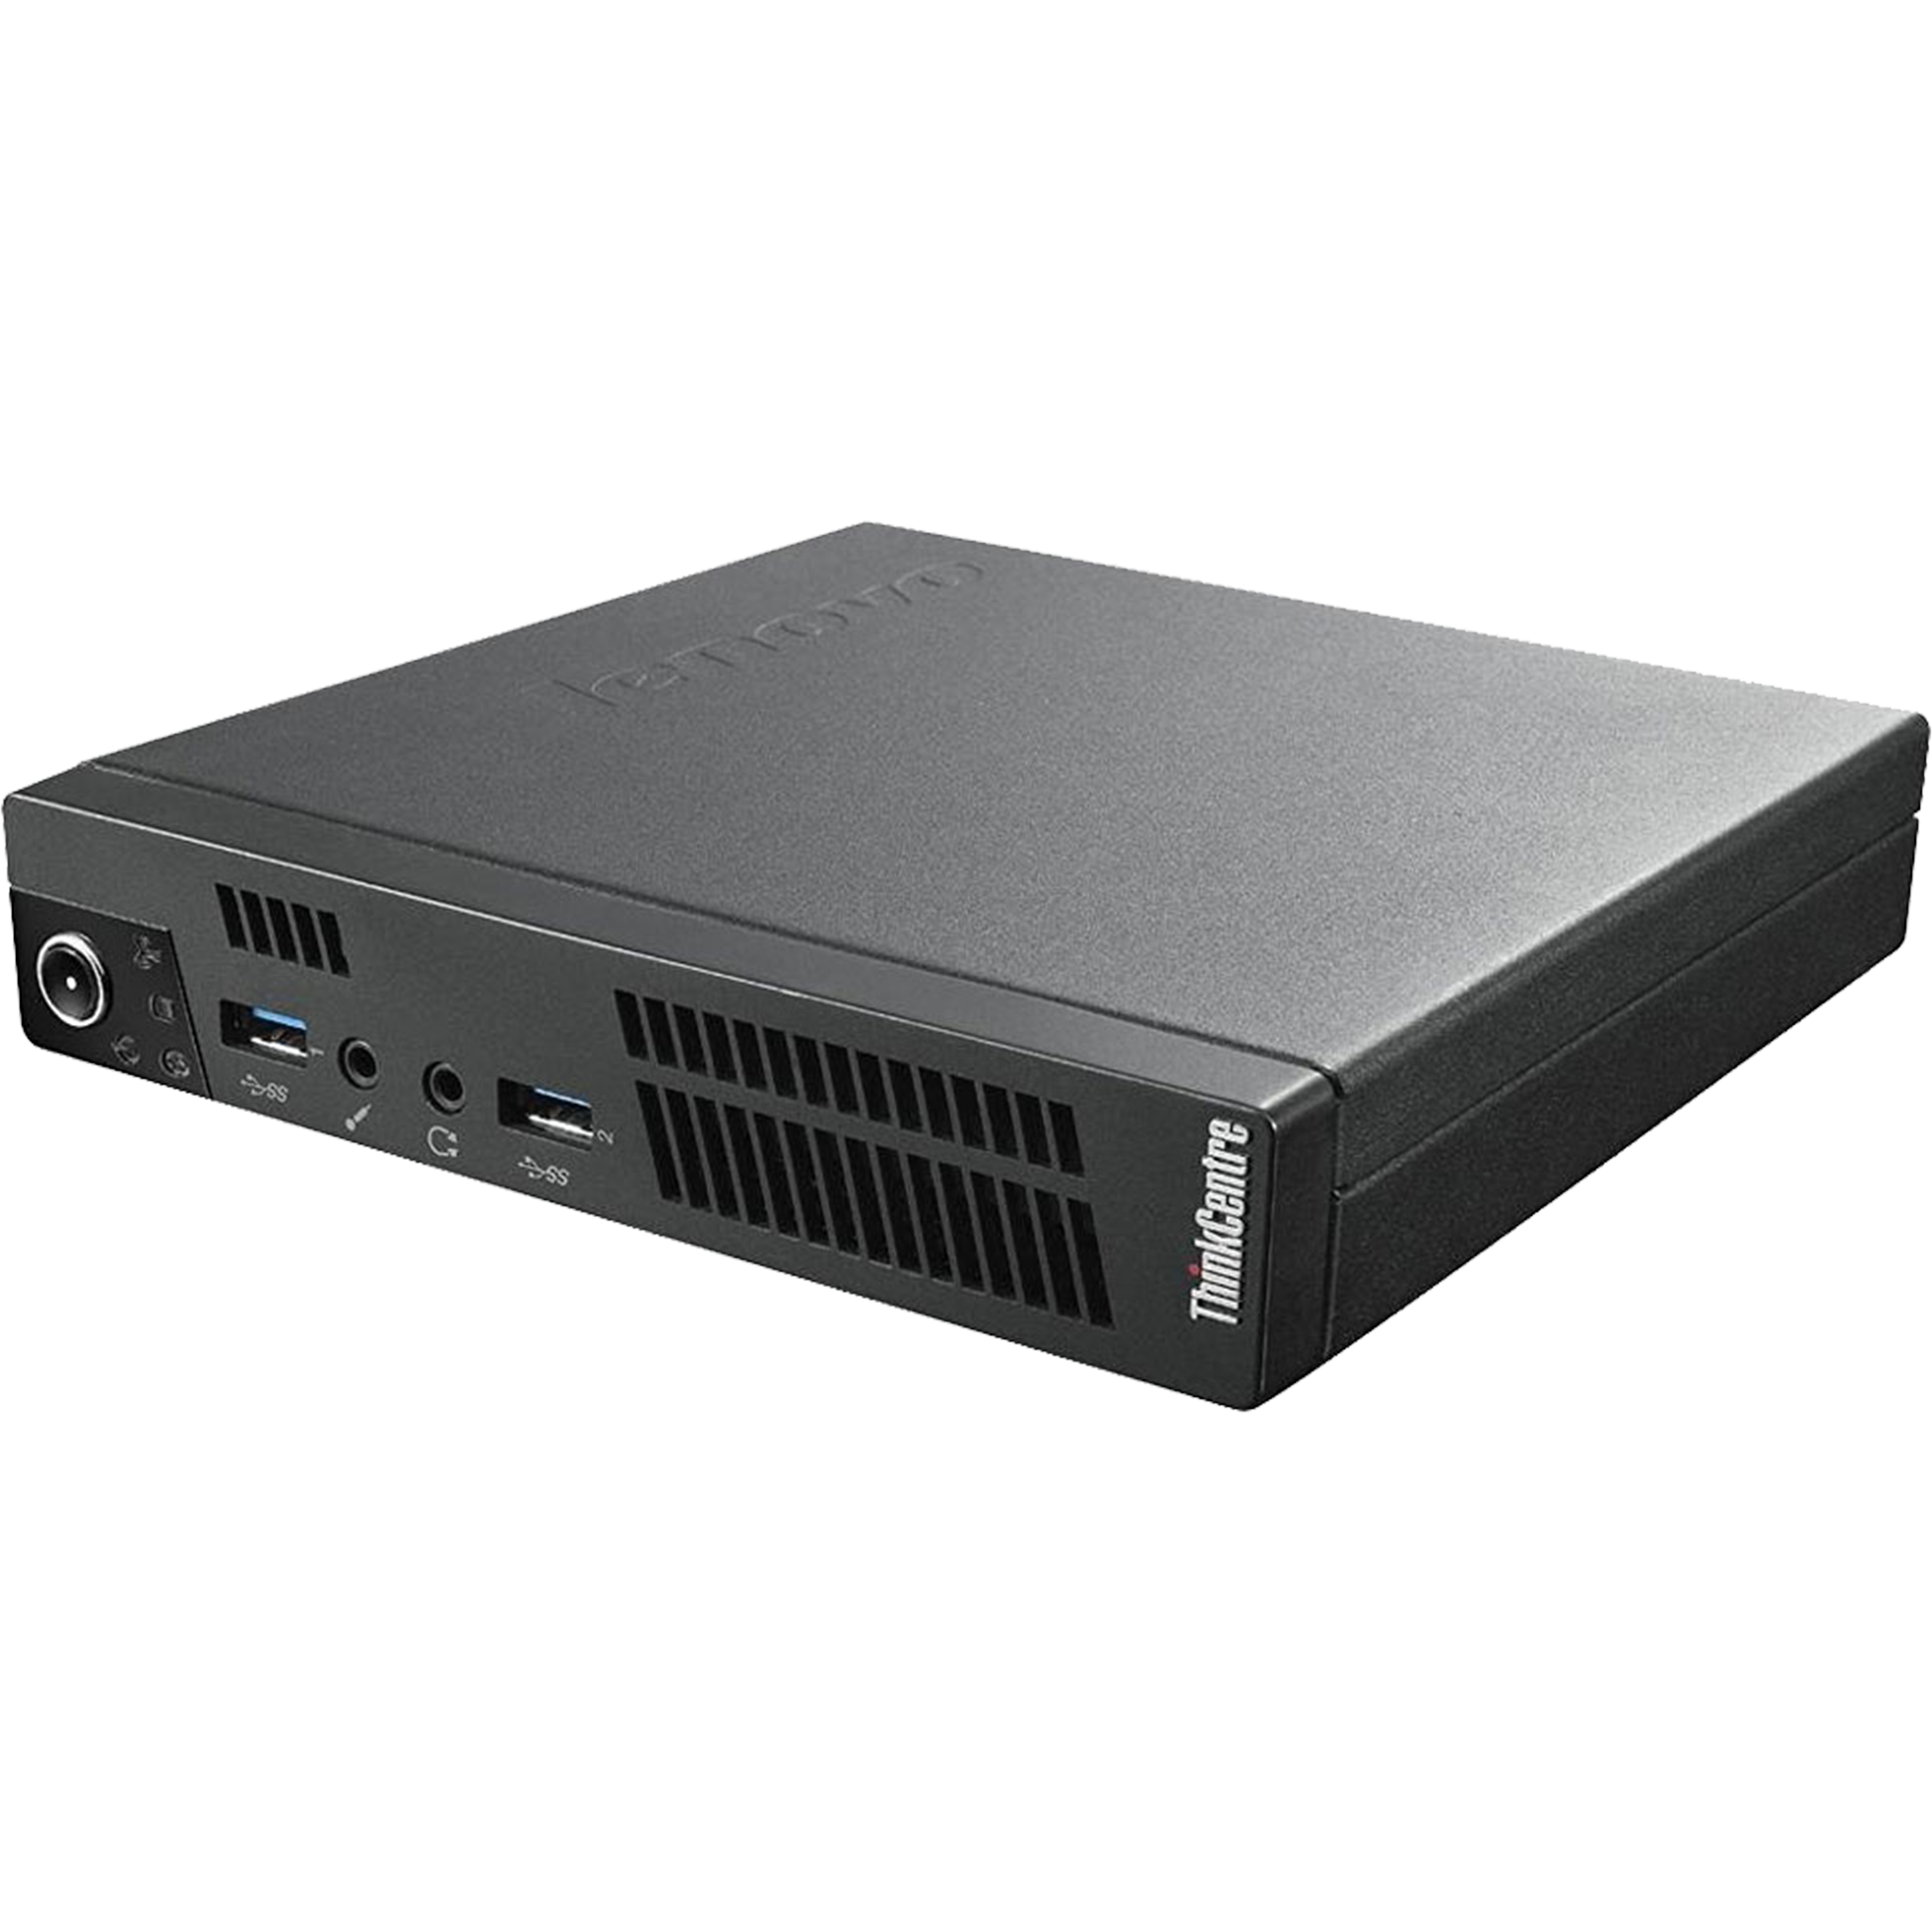 מחשב נייח מחודש חיון LENOVO M93p /i5- 4570T GEN4/ 16GB MEM / 480GB SSD /W10P/TINY